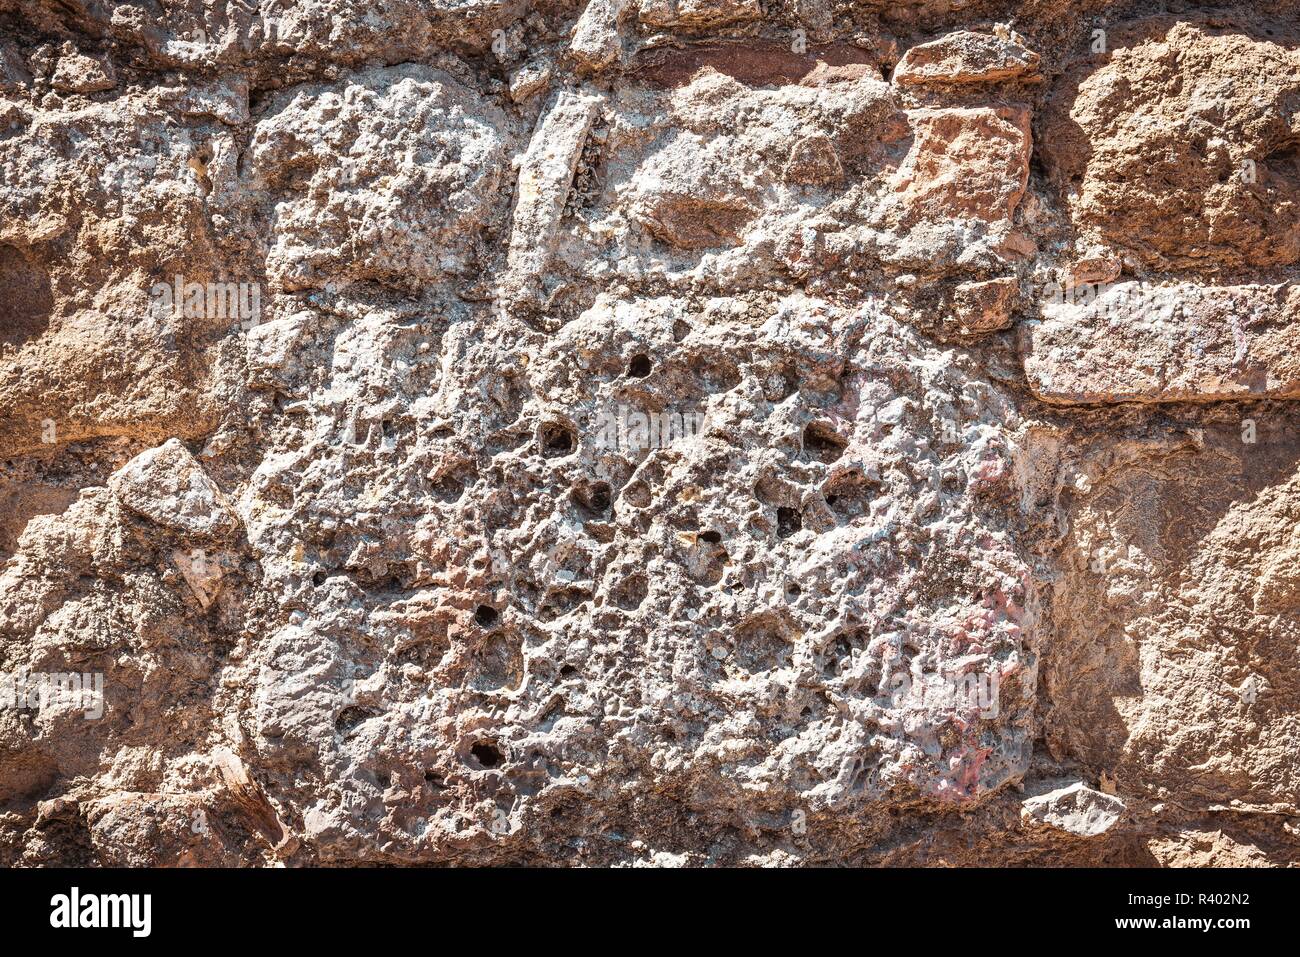 Photo horizontale avec la texture de l'ancien mur. Mur est construit à partir de pierres et de briques. Les briques sont orange et brun et usé de manière significative. Les pierres sont ve Banque D'Images